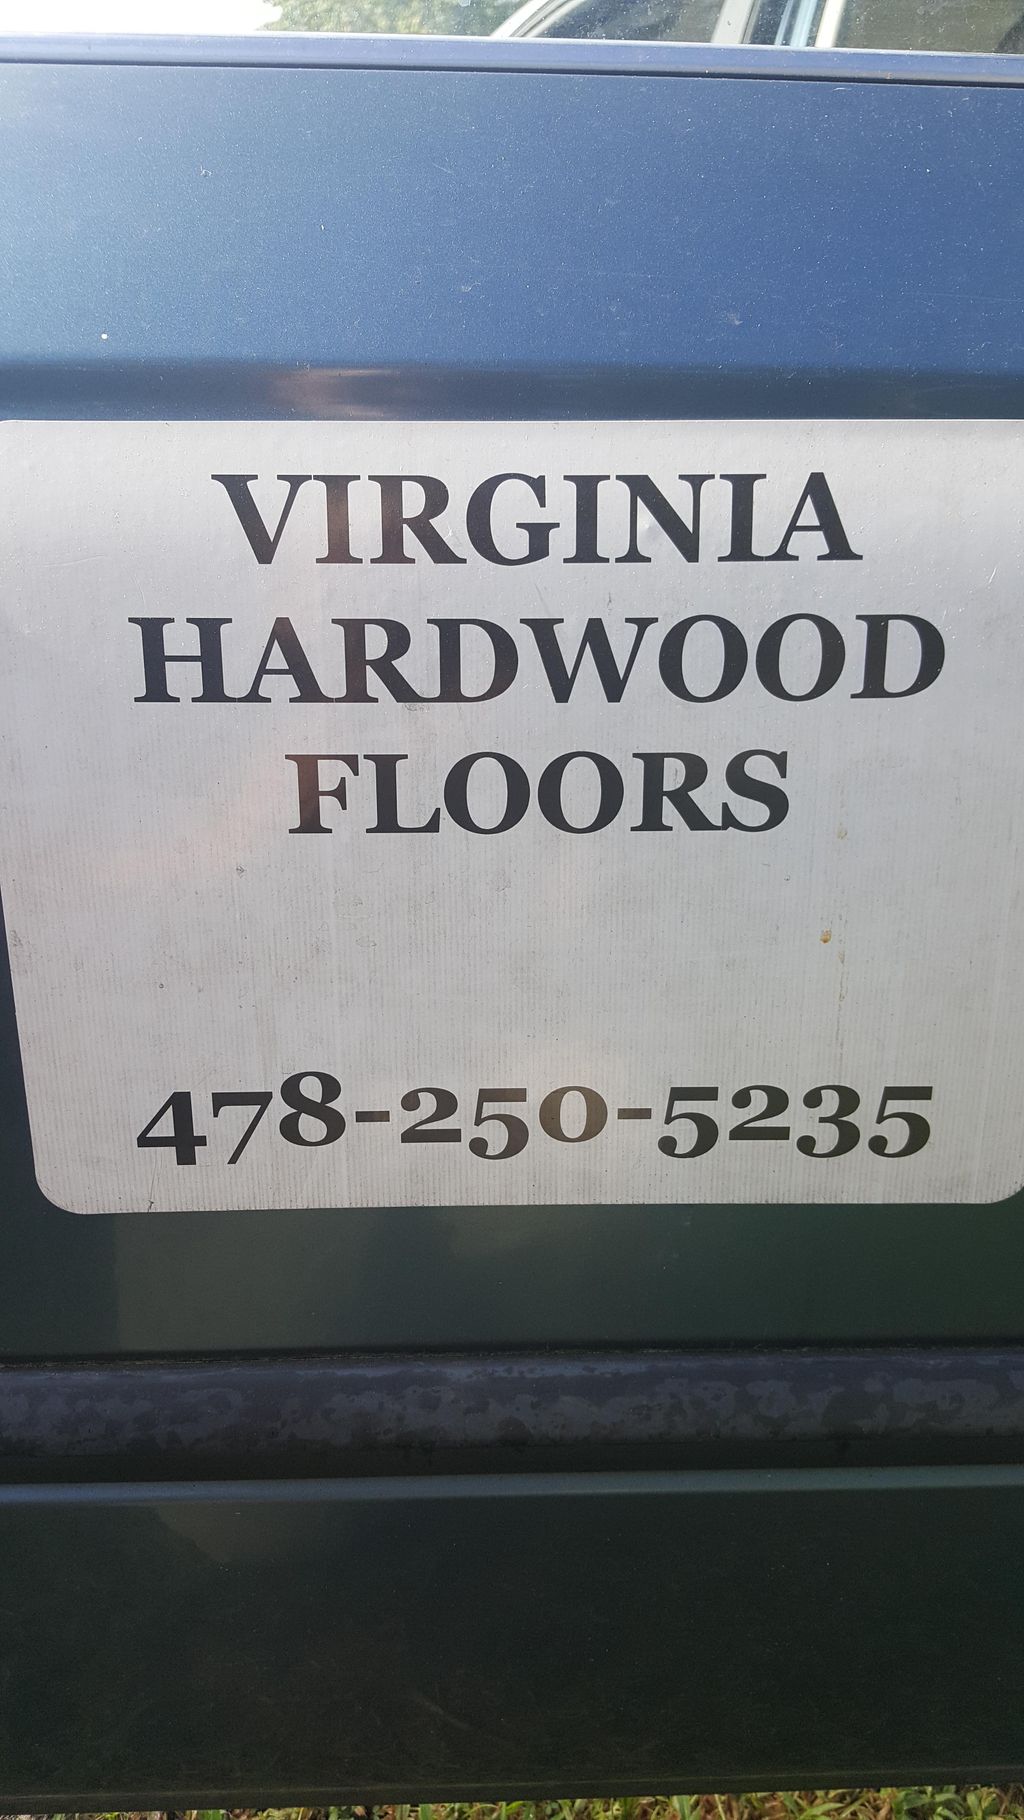 Virginia Hardwood Floors